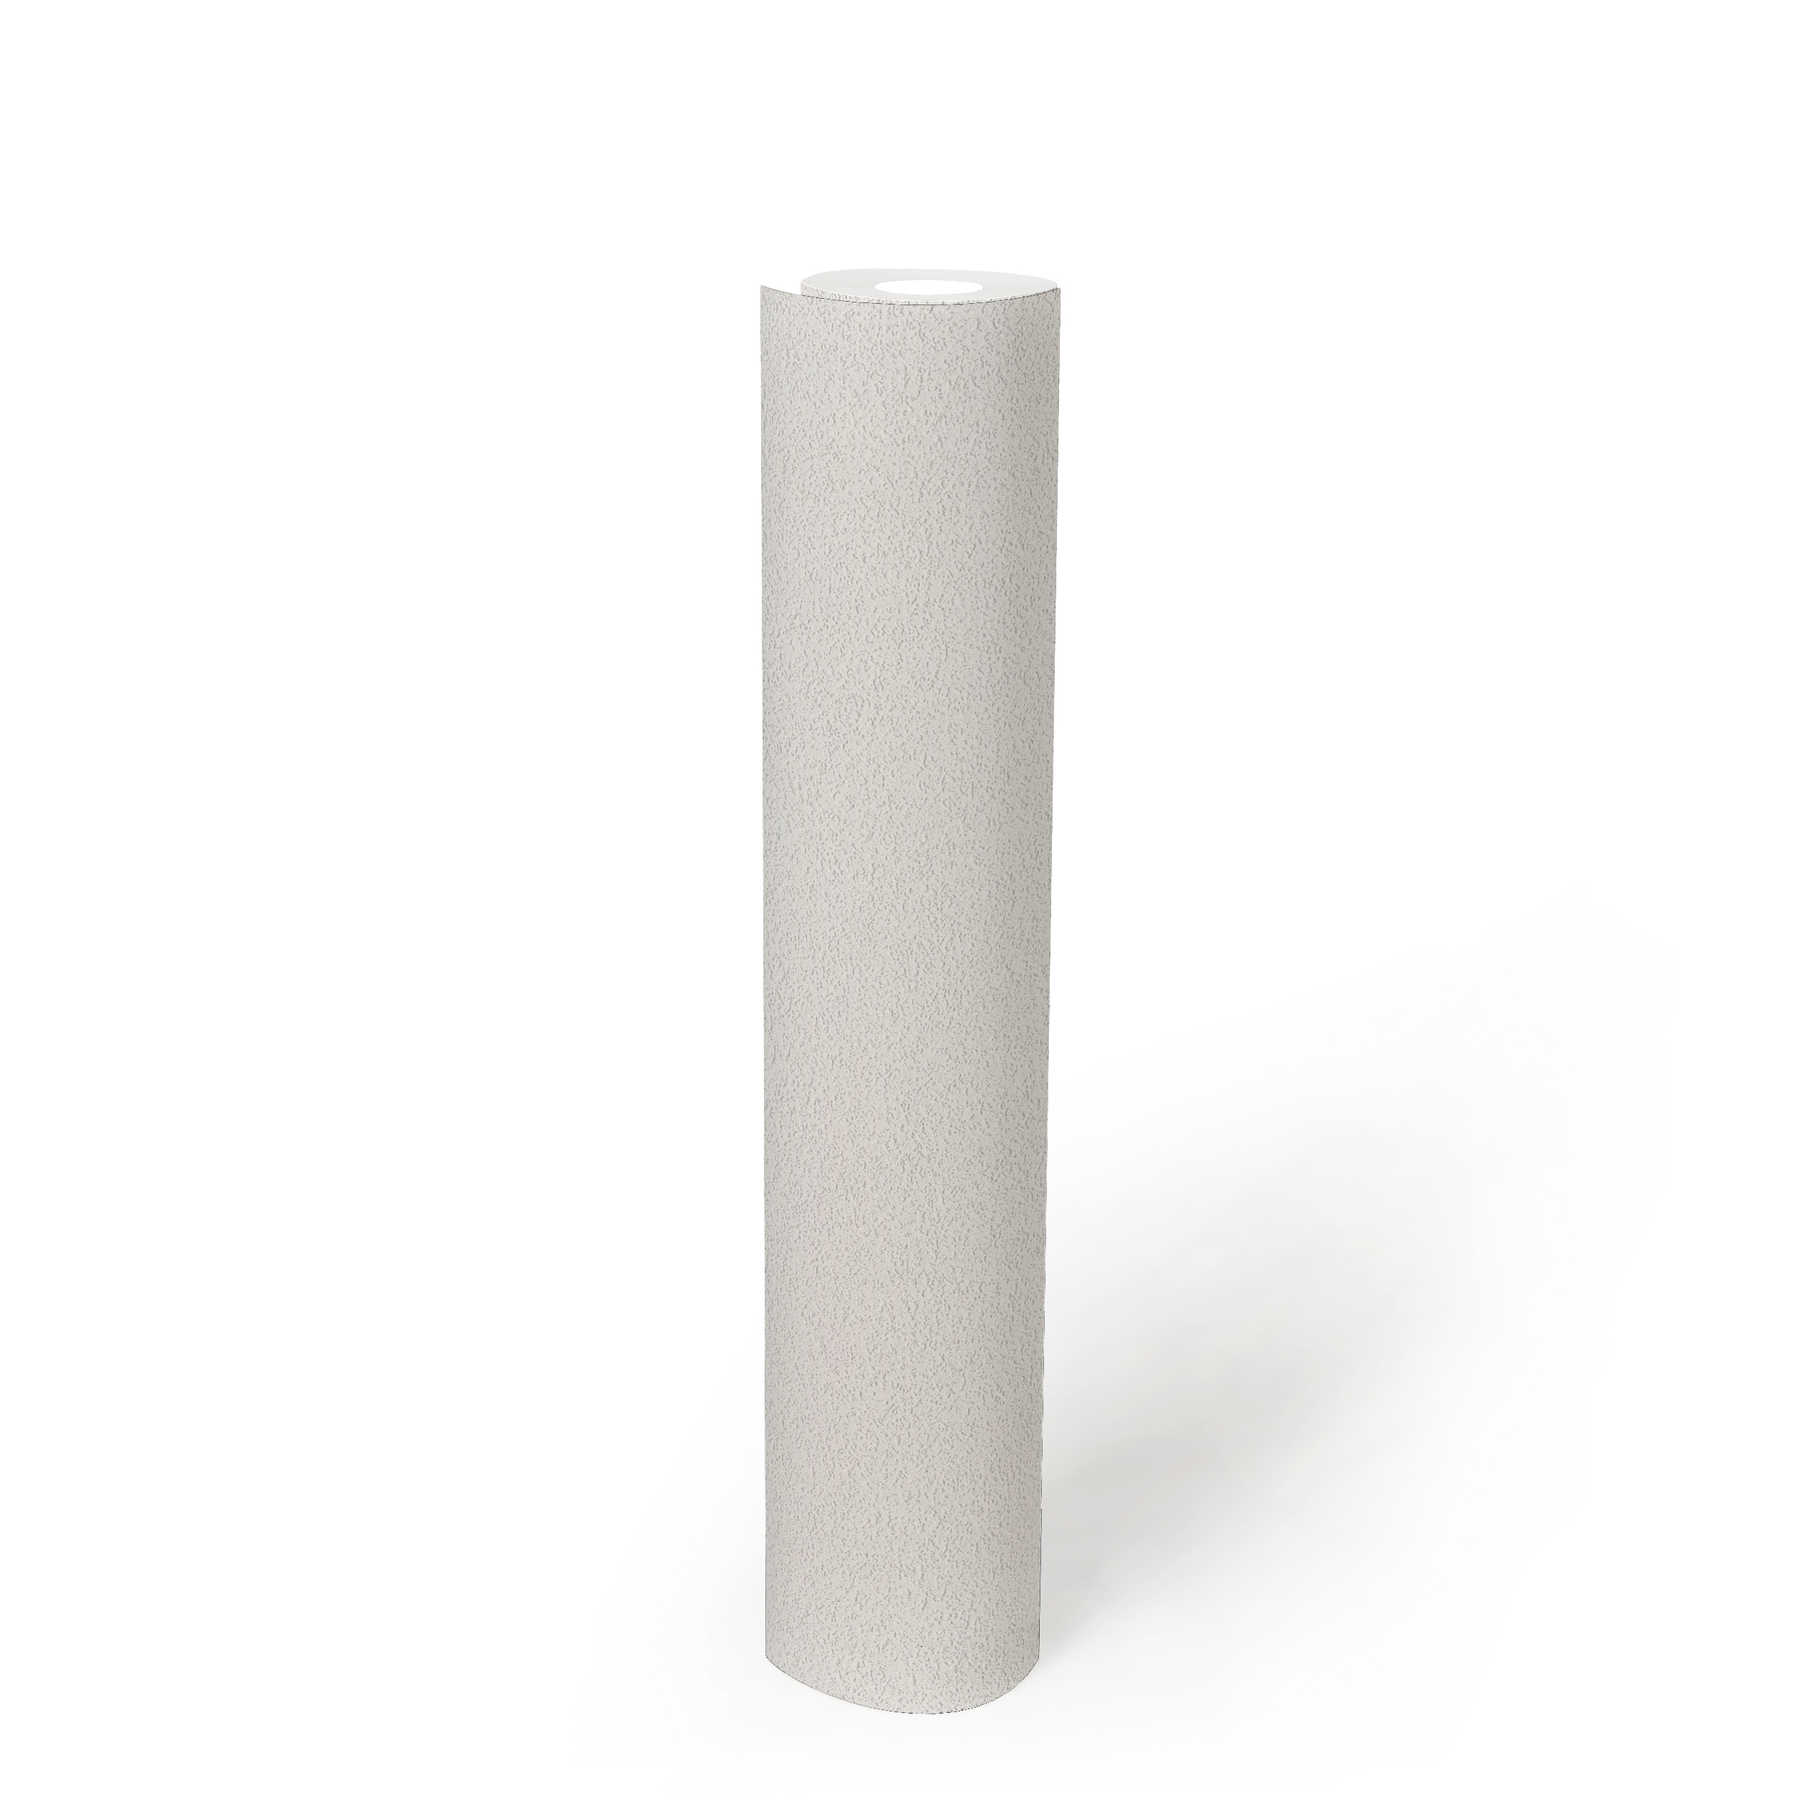             Unitapete mit feiner Oberflächenstruktur – Weiß
        